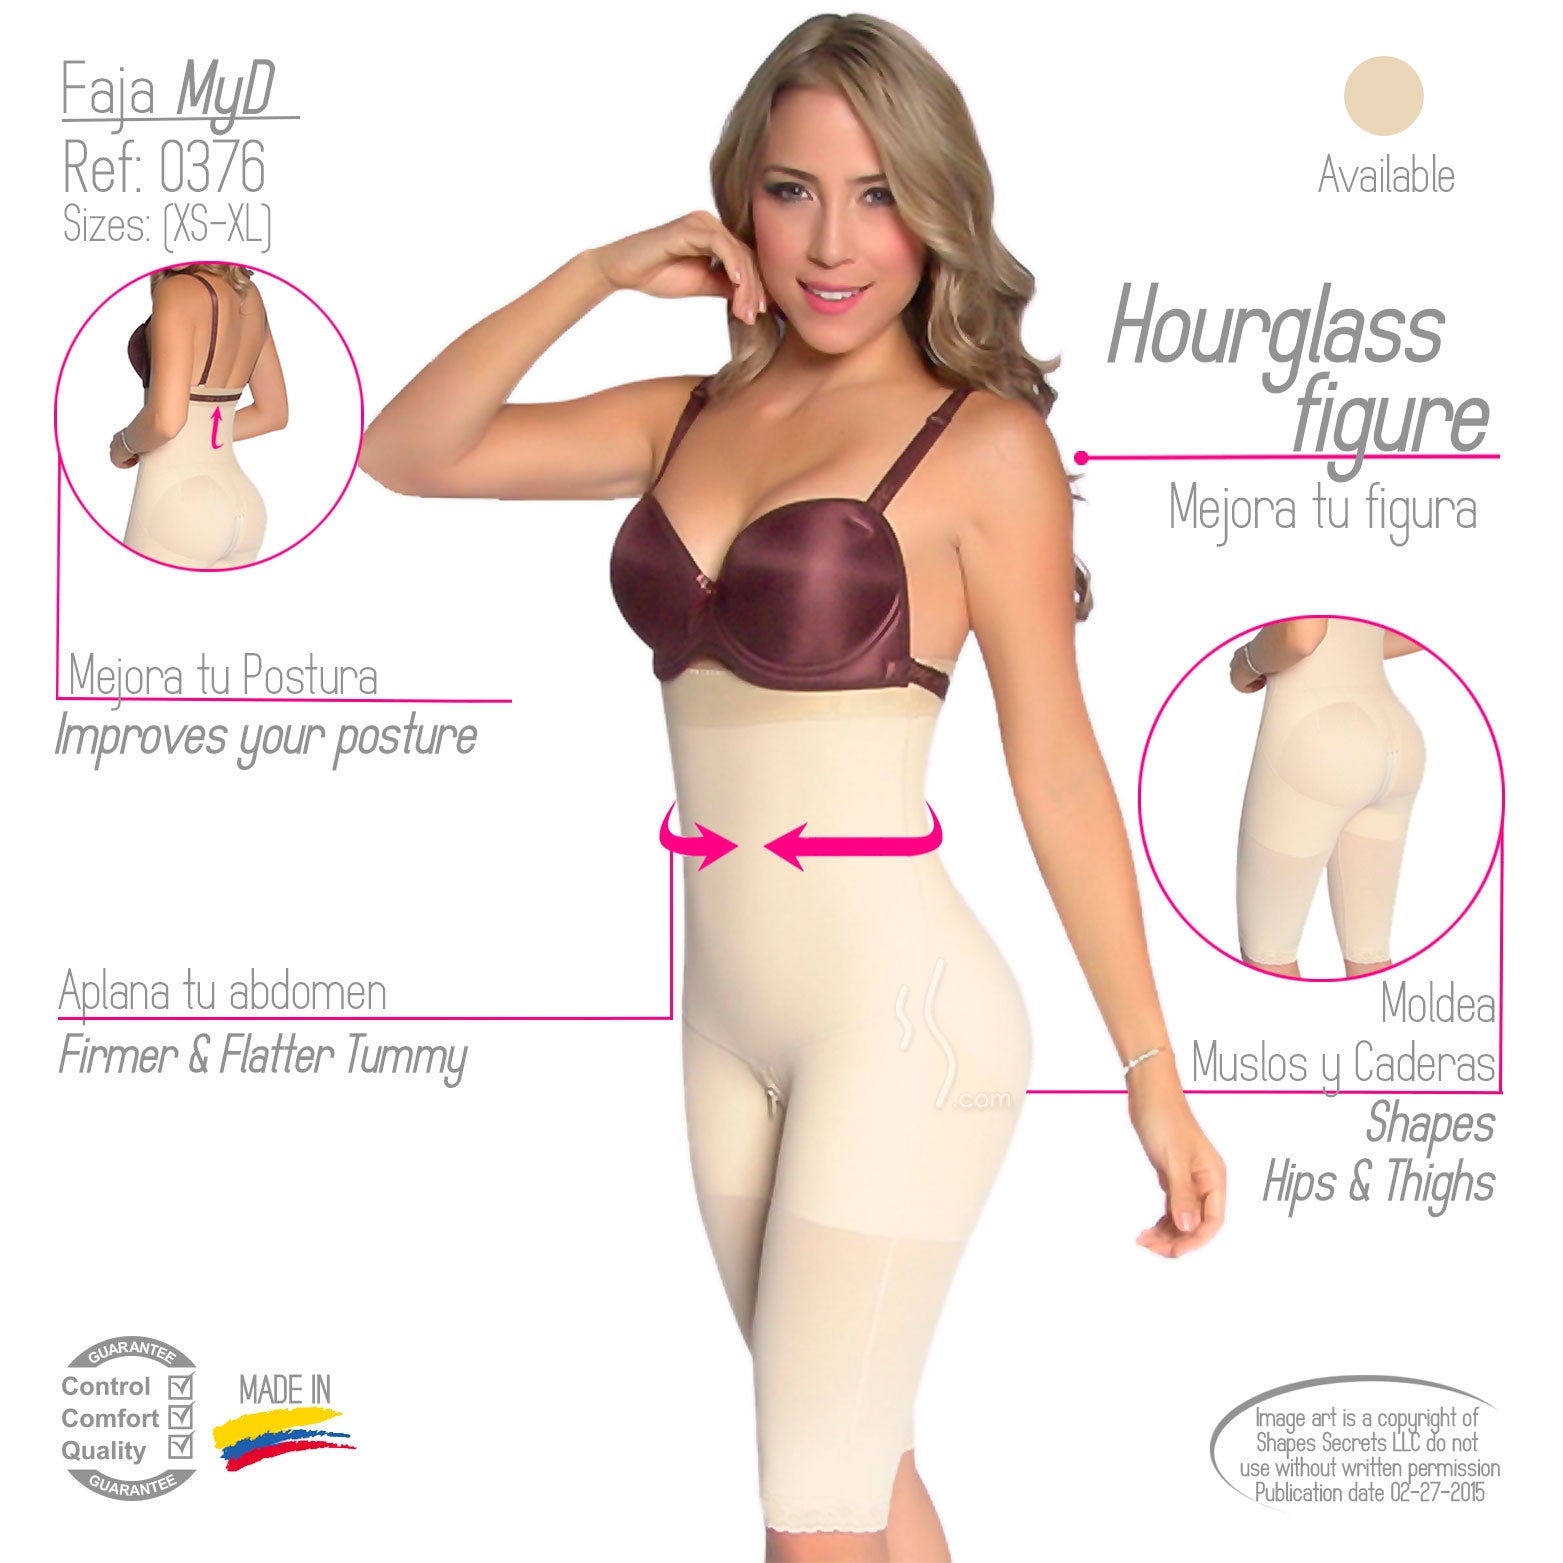 Fajas MYD 0376  Women's Colombian Postsurgical Body Shaper